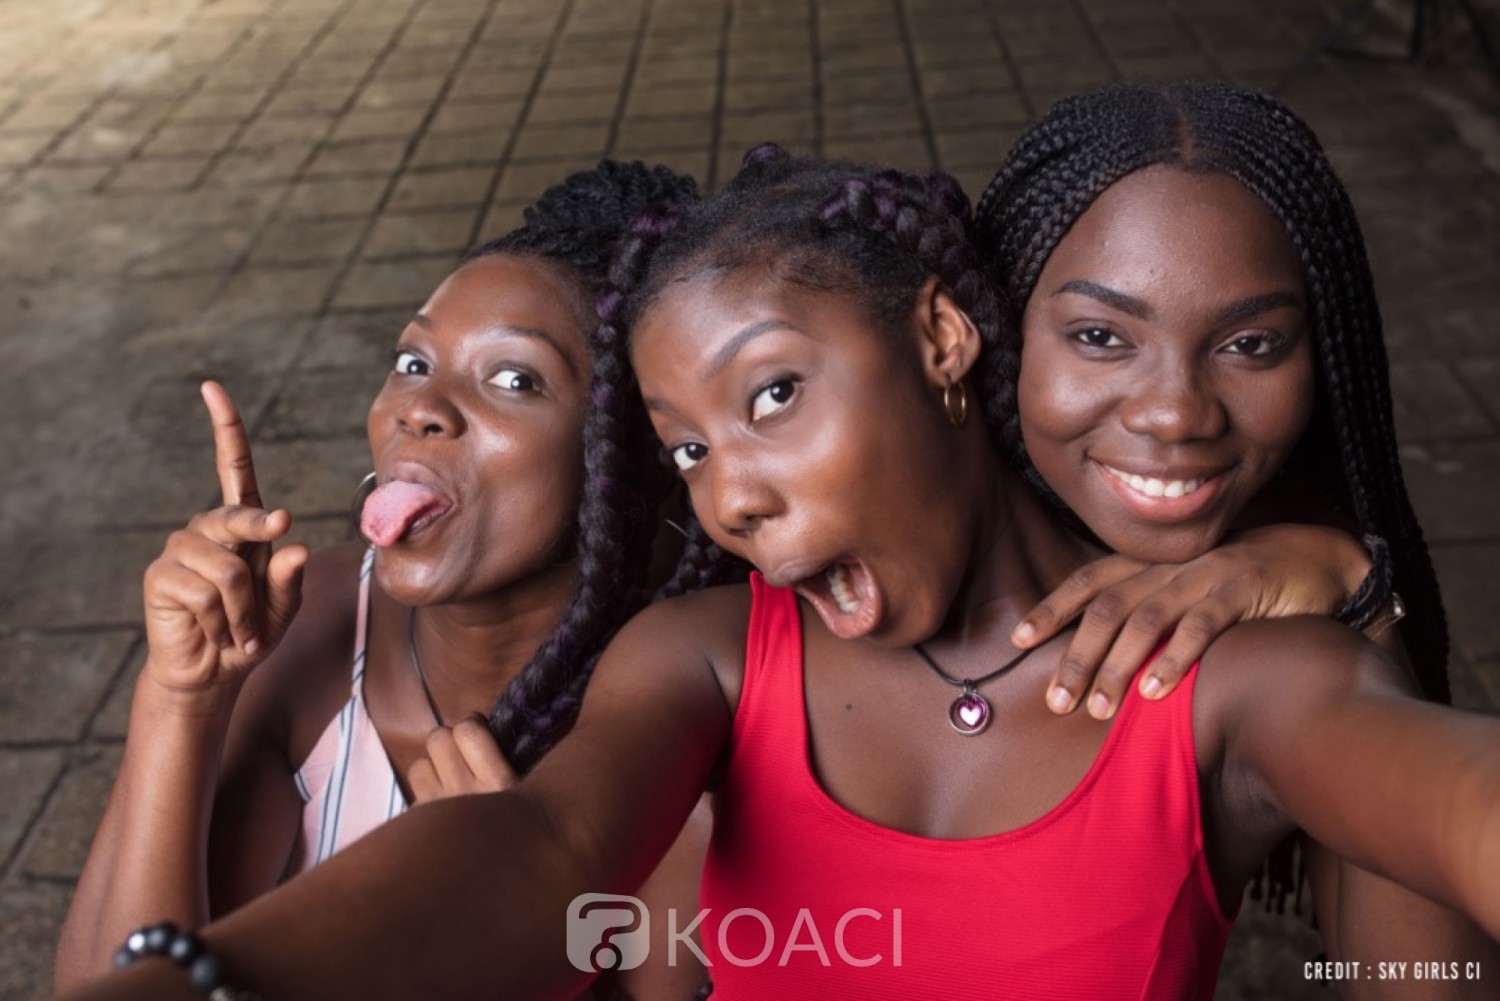 Côte d'Ivoire : Sky Girls ce nouveau mouvement de partage entre adolescentes qui s'installe au pays